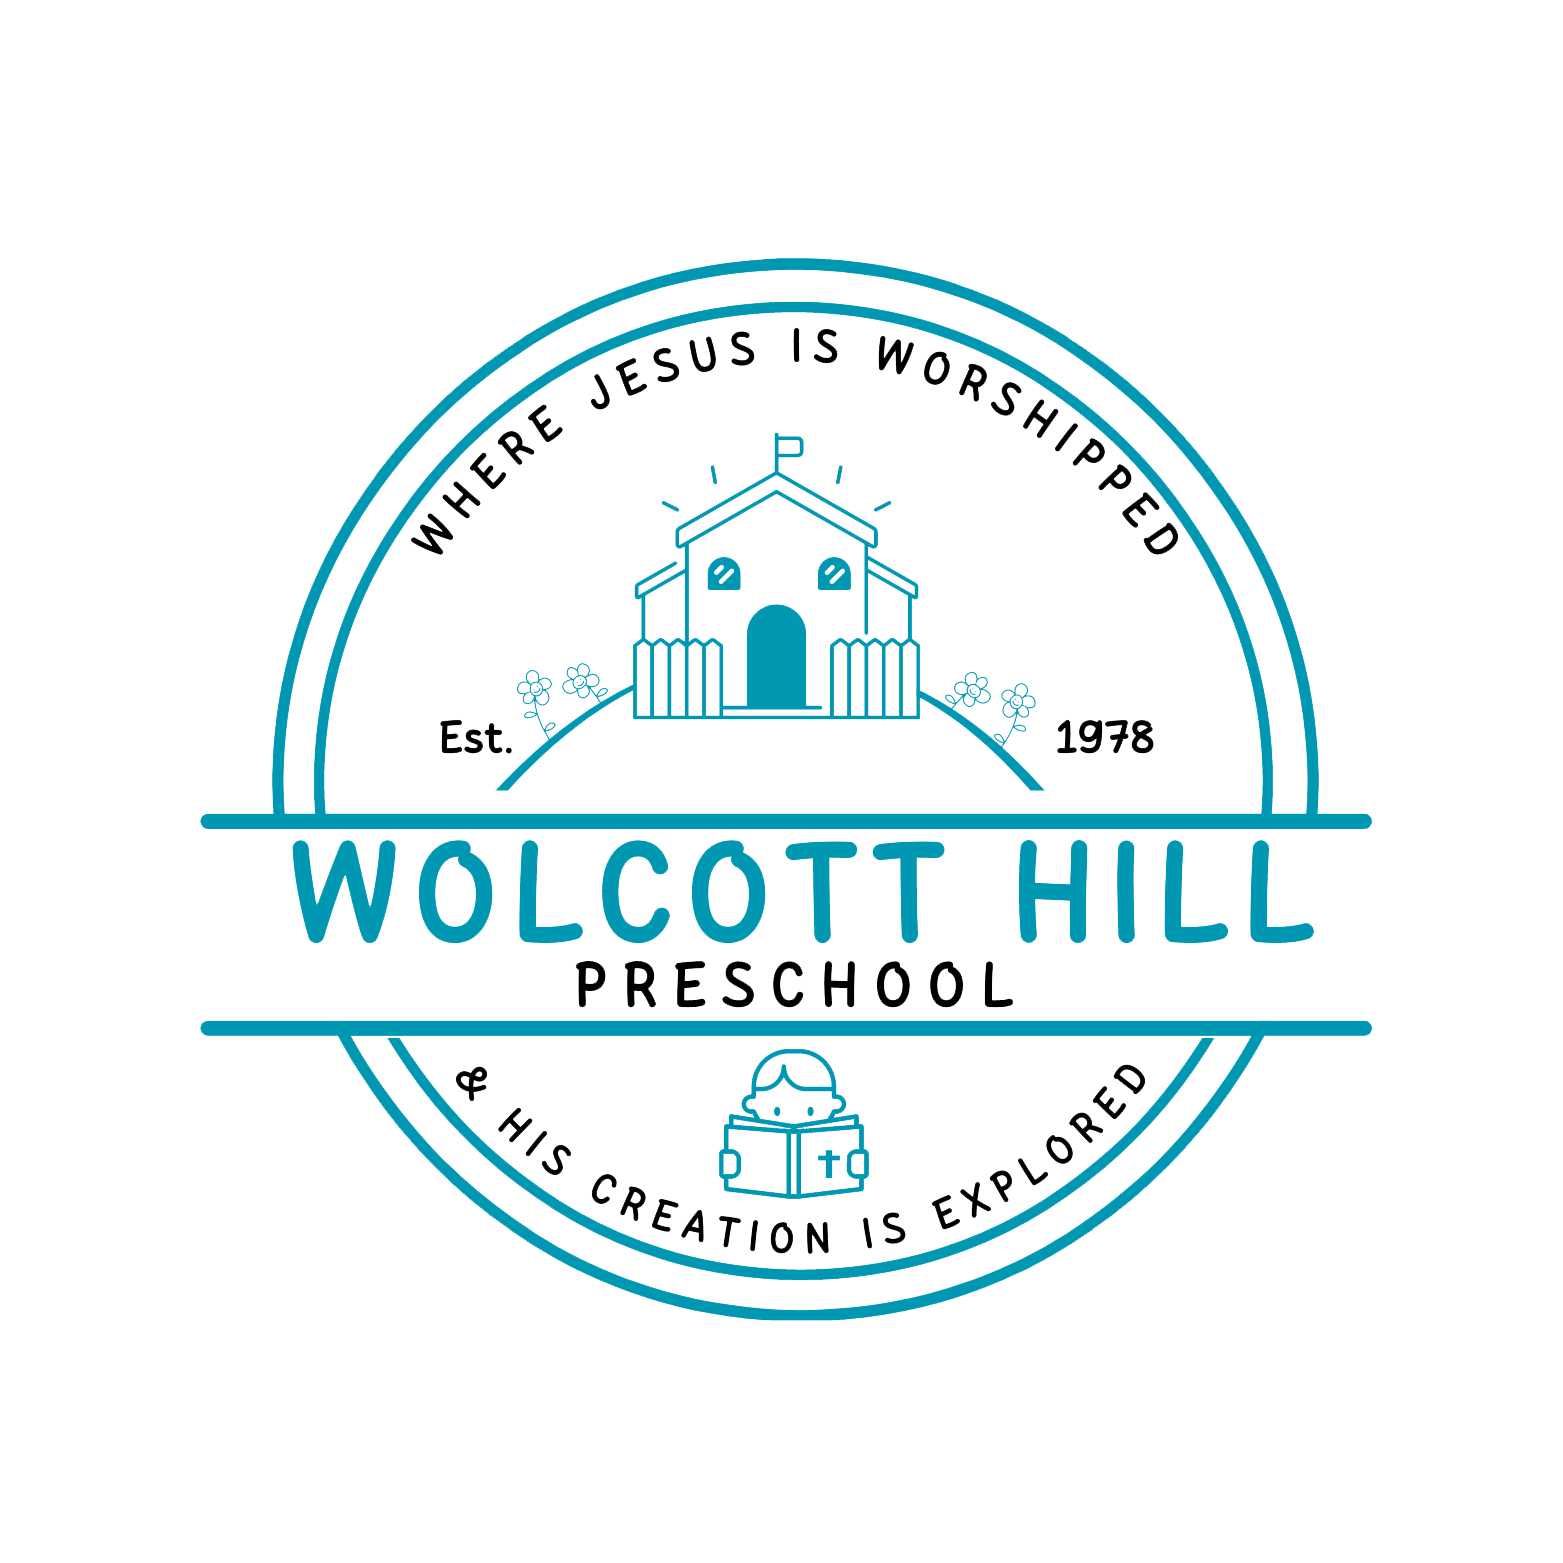 Wolcott Hill Preschool